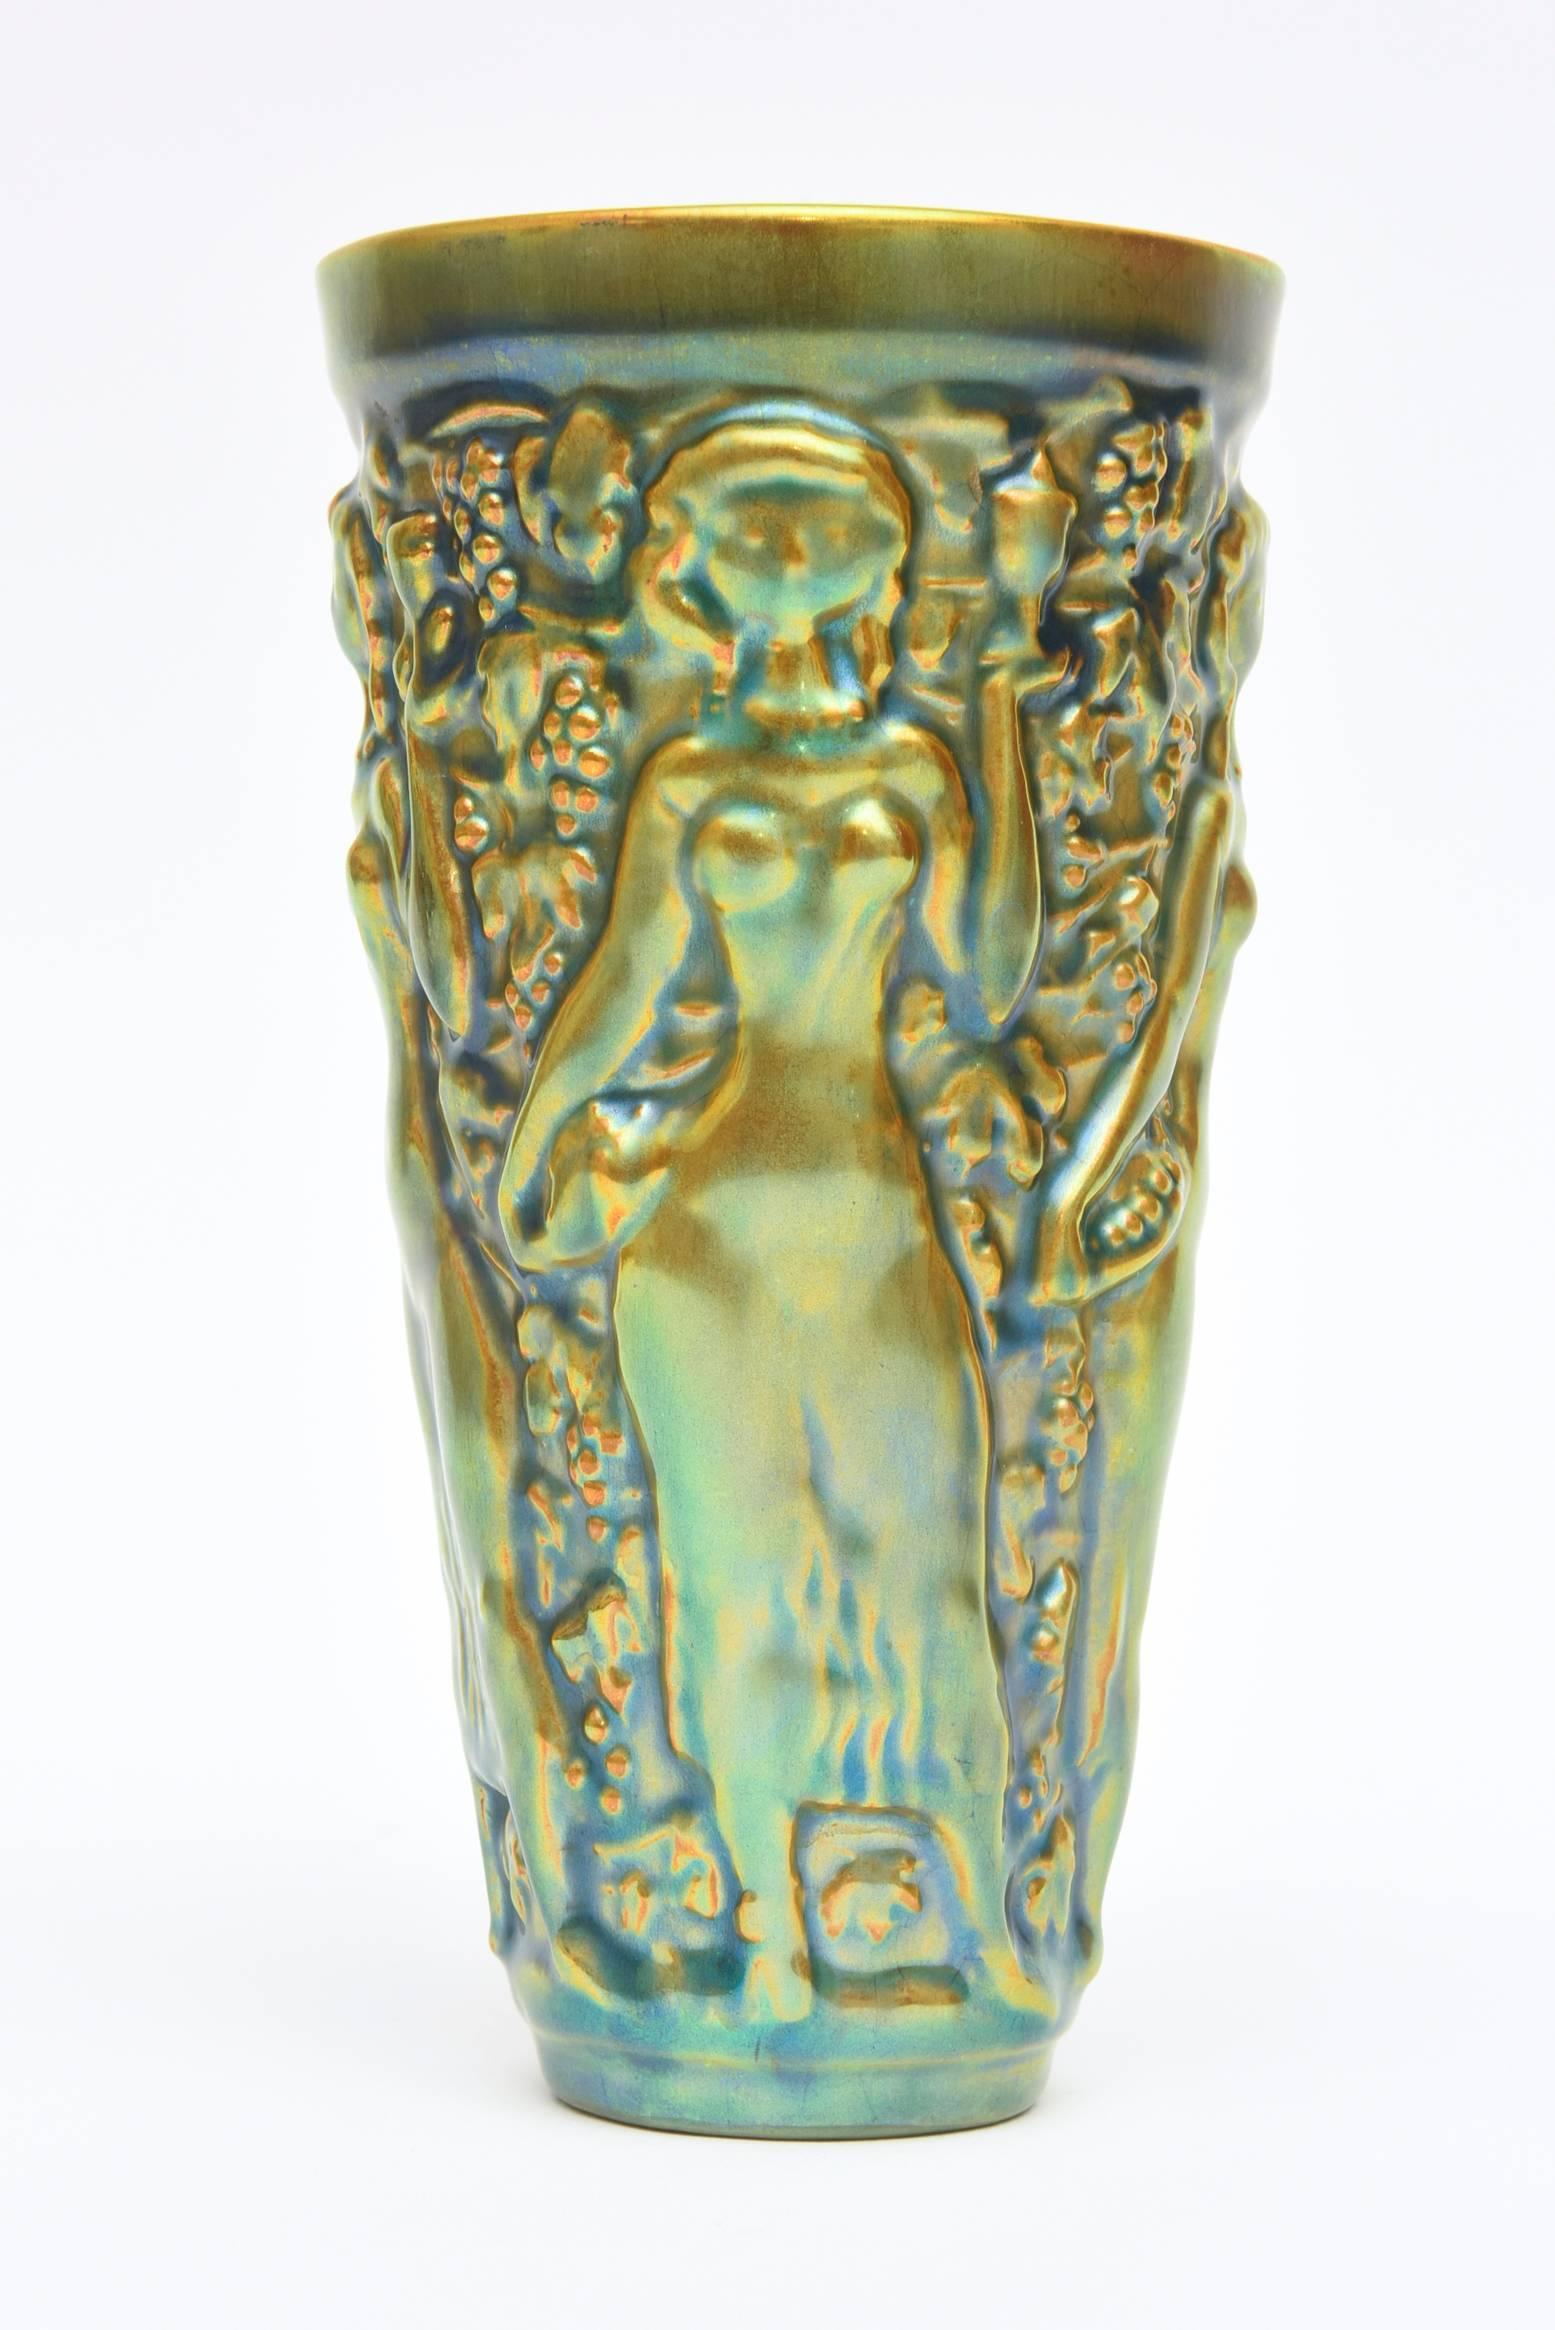 La texture très vintage et les formes en relief de ce vase en céramique émaillée sont l'œuvre de l'artiste hongrois Zsolnay. C'est une combinaison glorieuse de la couleur des reliefs élégants nus sensuels dans ce petit vase navire et objet décoratif